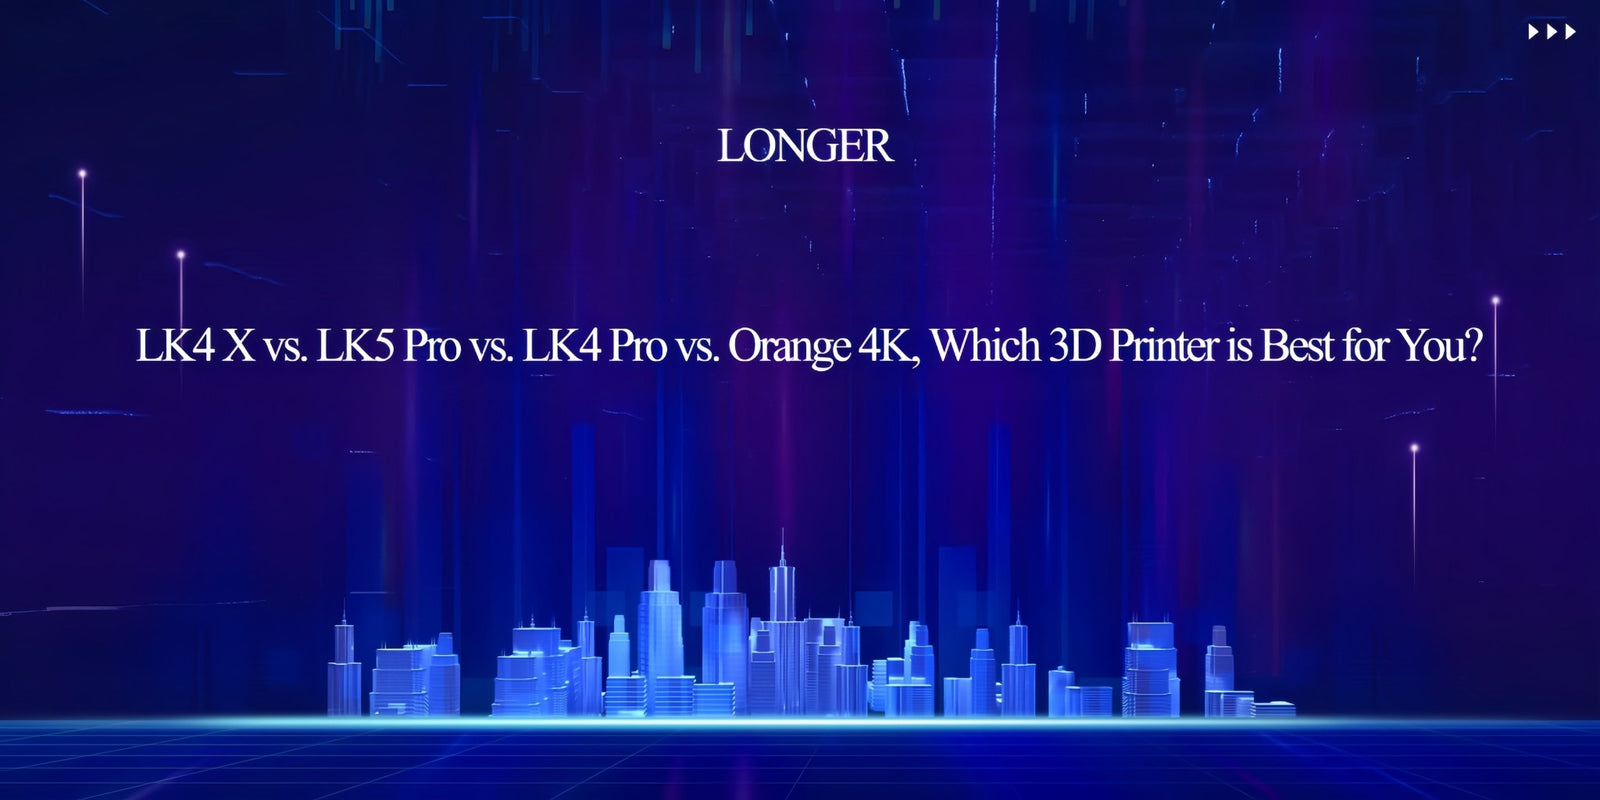 LONGER LK4 X vs. LK5 Pro vs. LK4 Pro vs. Orange 4K, Which 3D Printer is Best for You? - LONGER